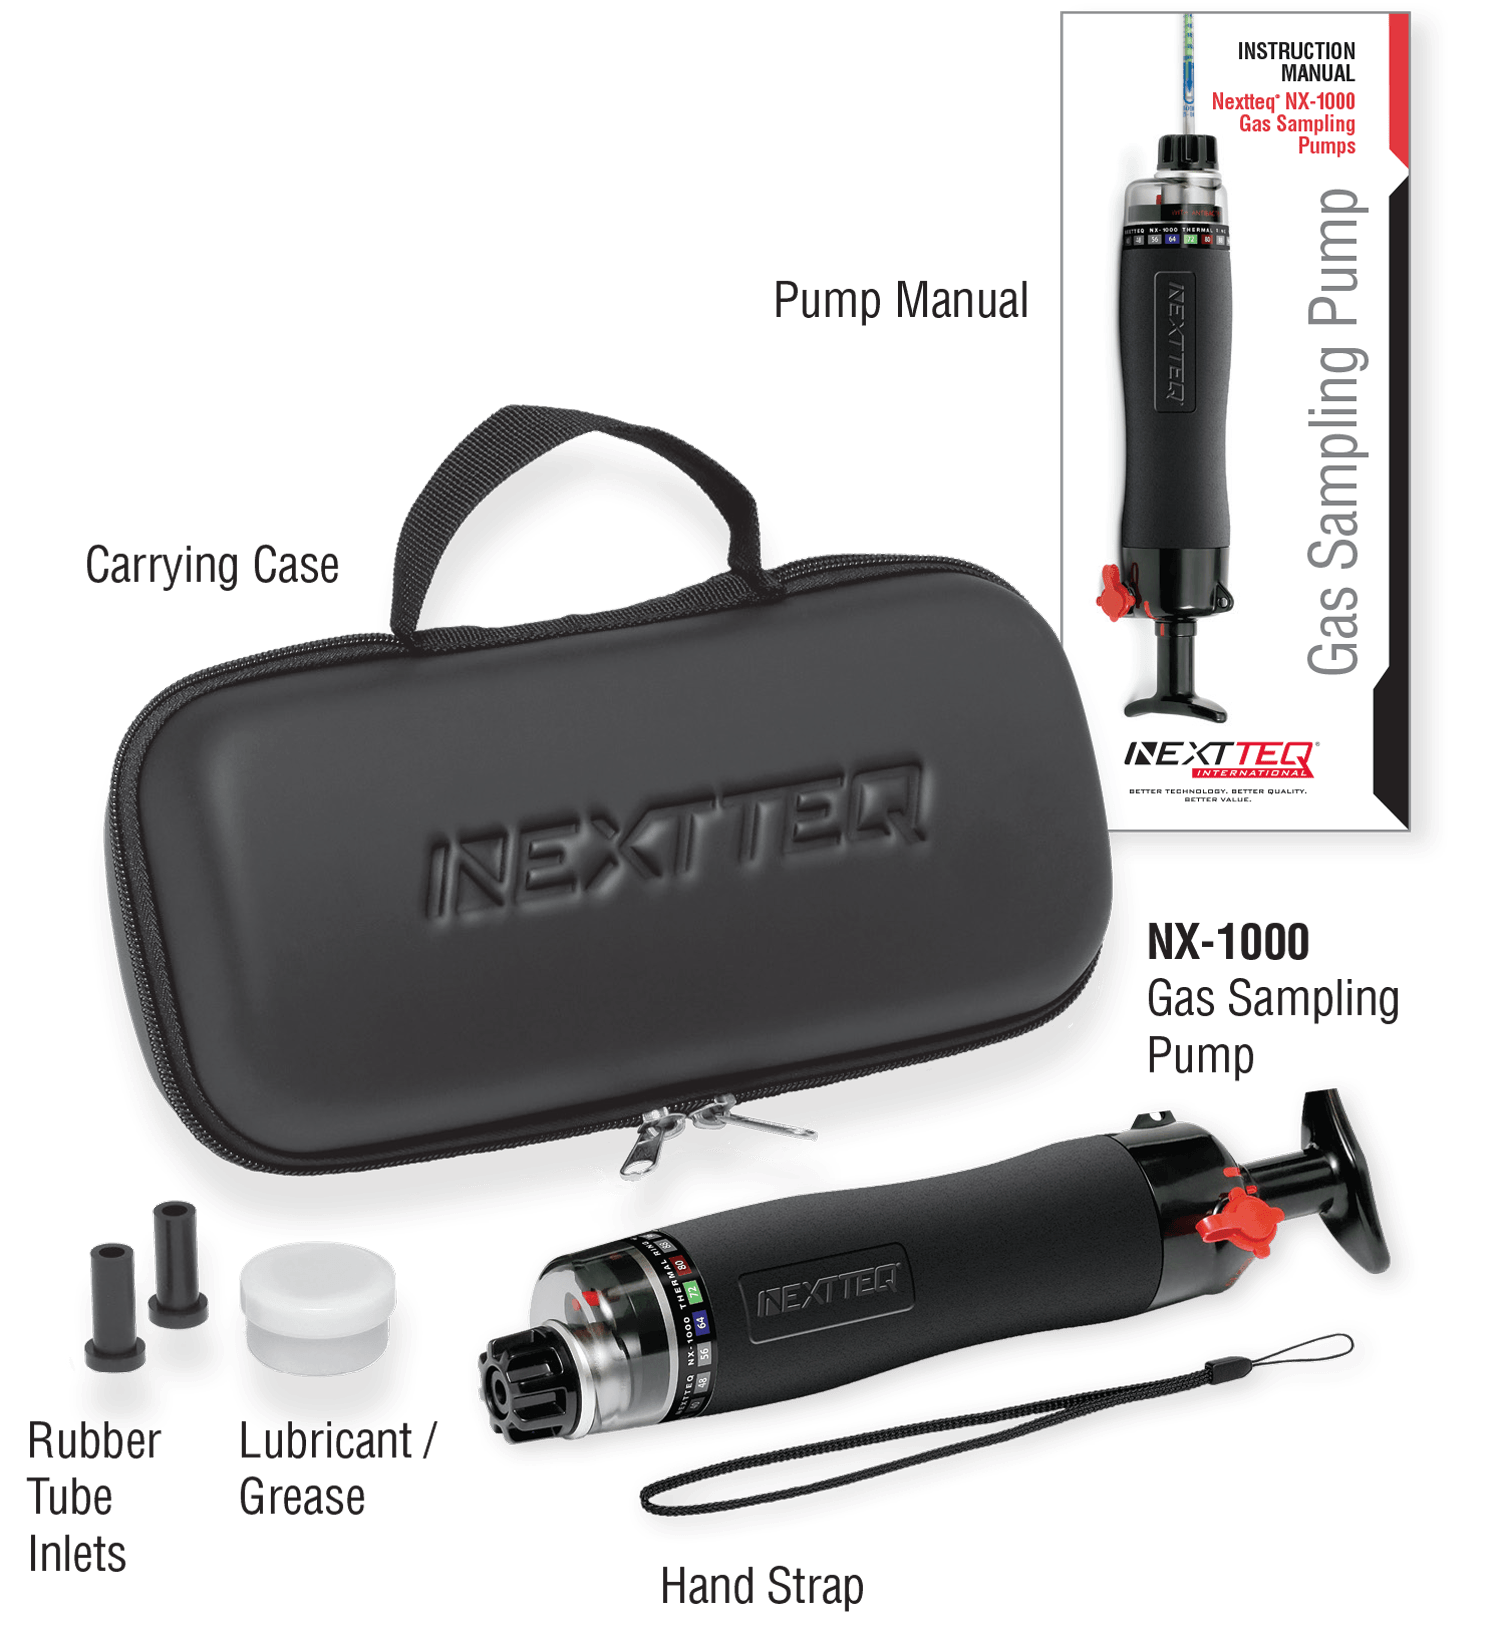 A Nextteq® NX-1000 Pump kit.